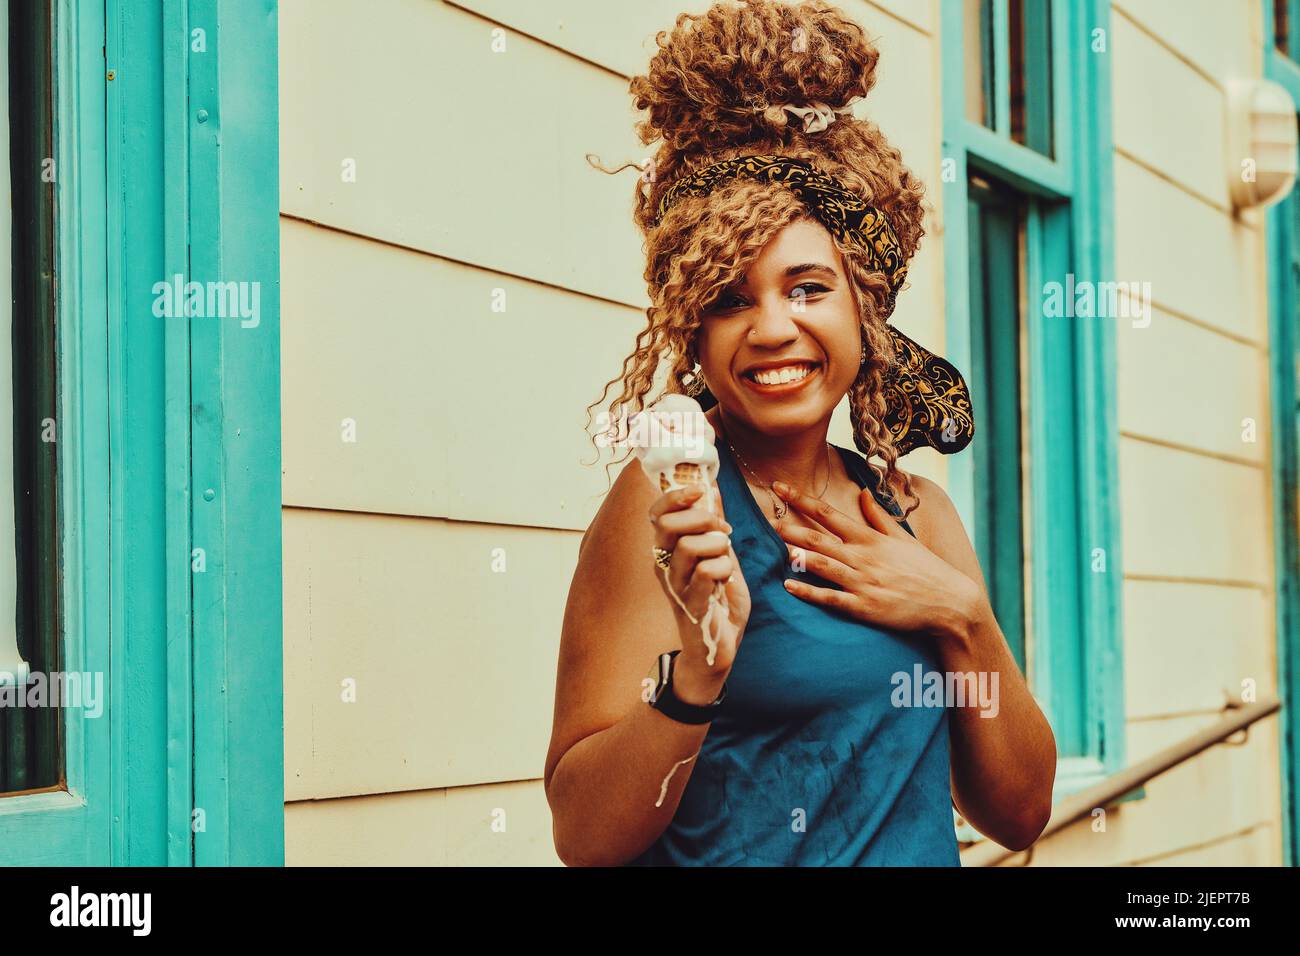 Junge Erwachsene Frau afro Haar lächelnd essen Eis im Sommer im Freien Blick auf Kamera aufgenommen Stockfoto